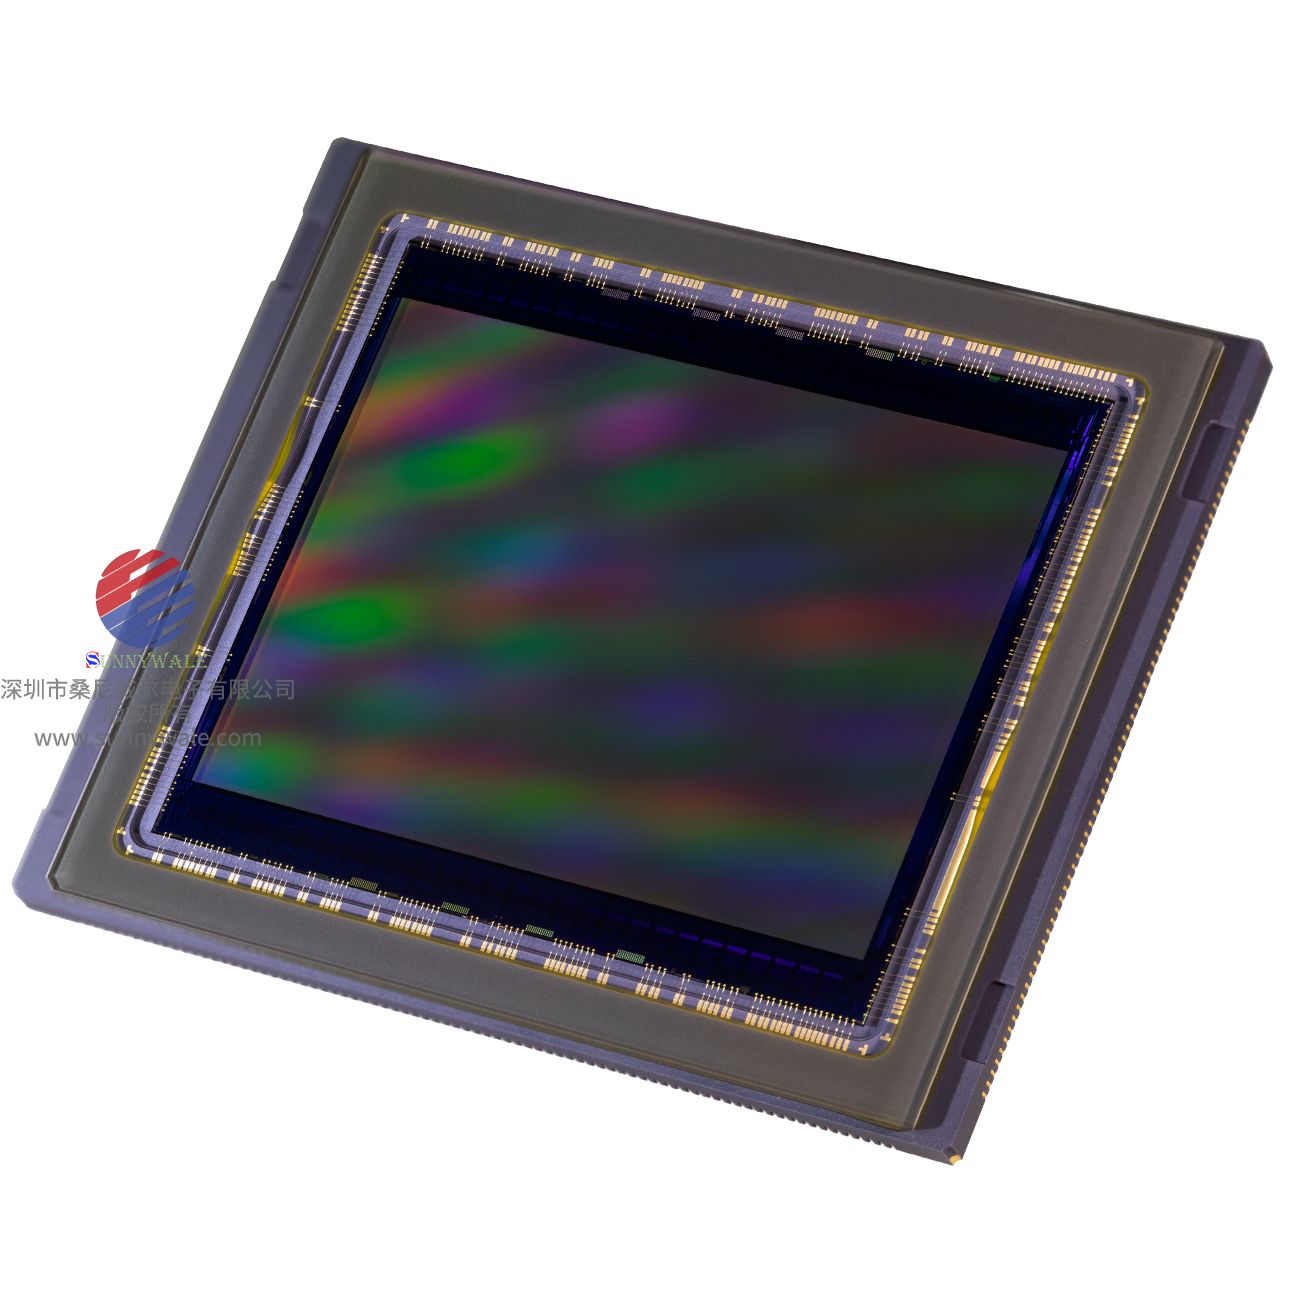 IMX361AQE， SONY中画幅CMOS有哪些，索尼44x33mm CCD，中画幅单反相机CMOS，专业相机图像传感器，中画幅CMOS图像传感器